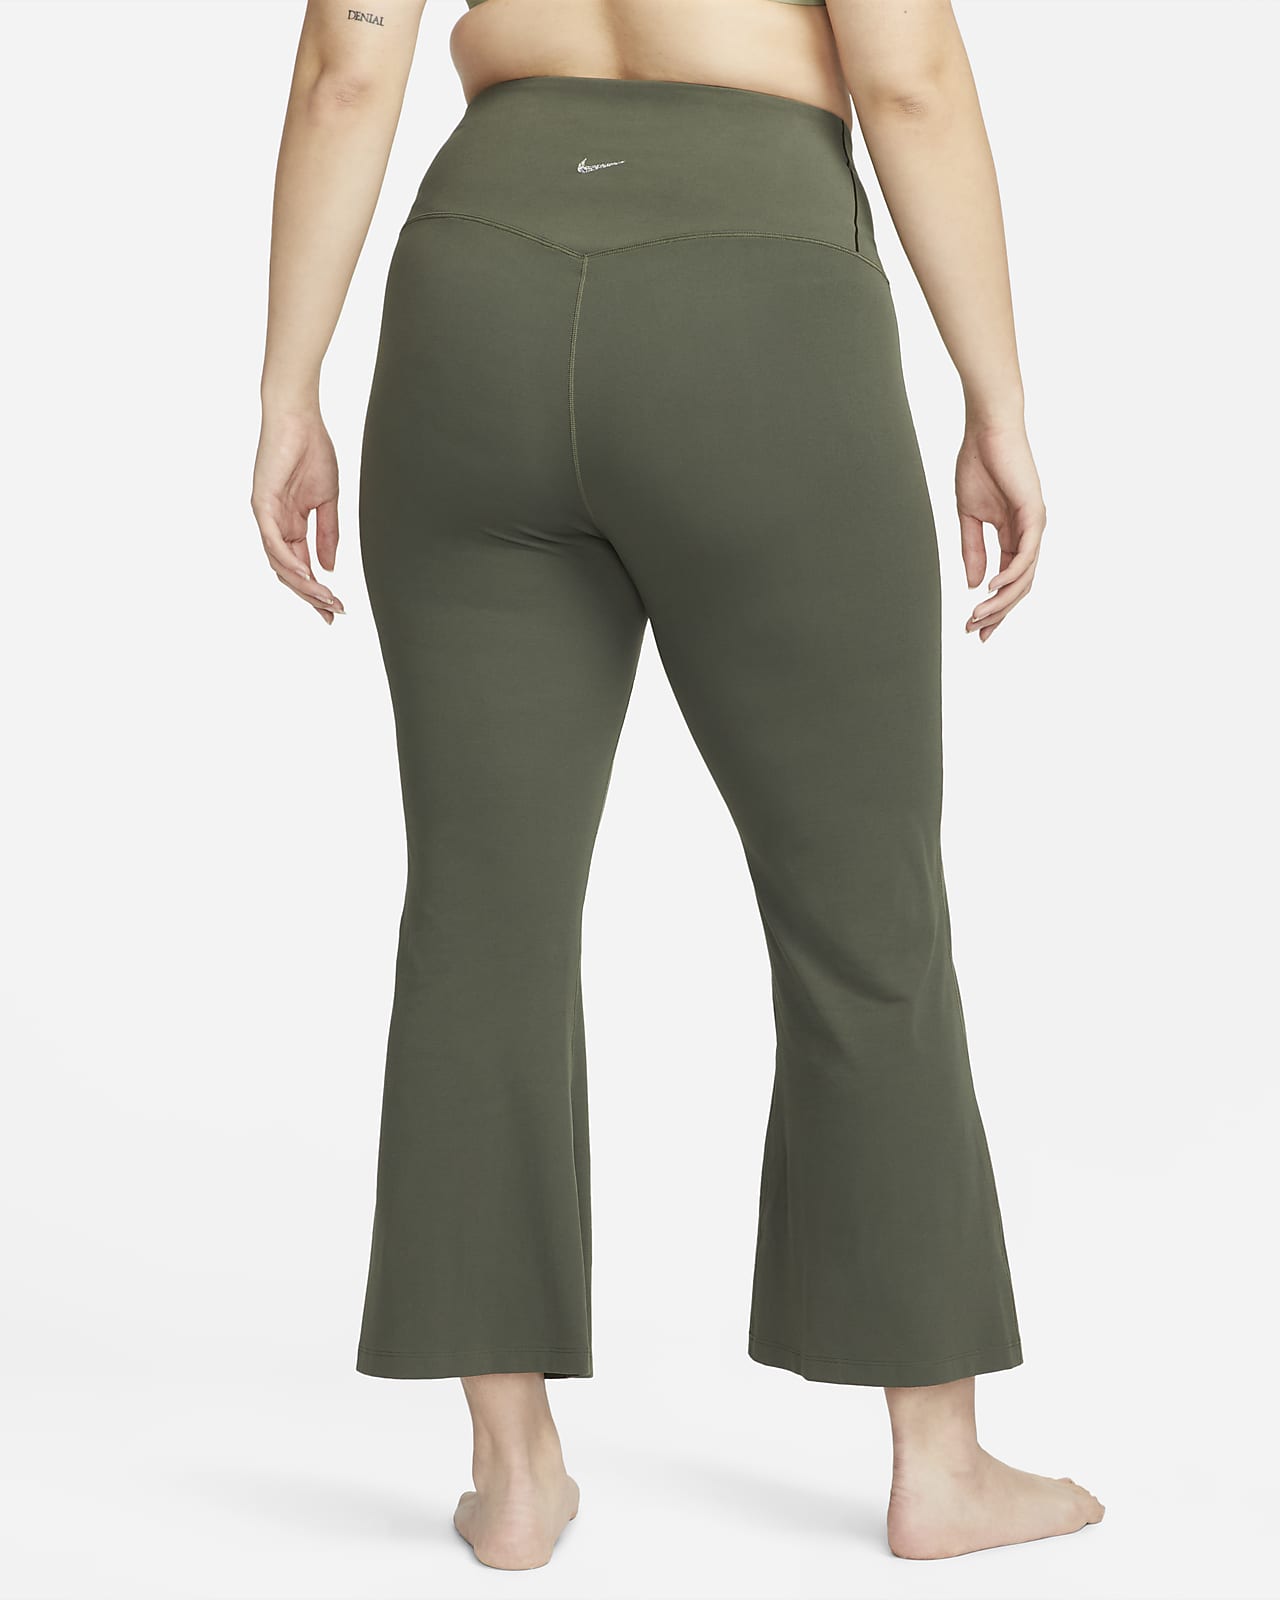 Amazon.com: Nike Yoga Pants Women